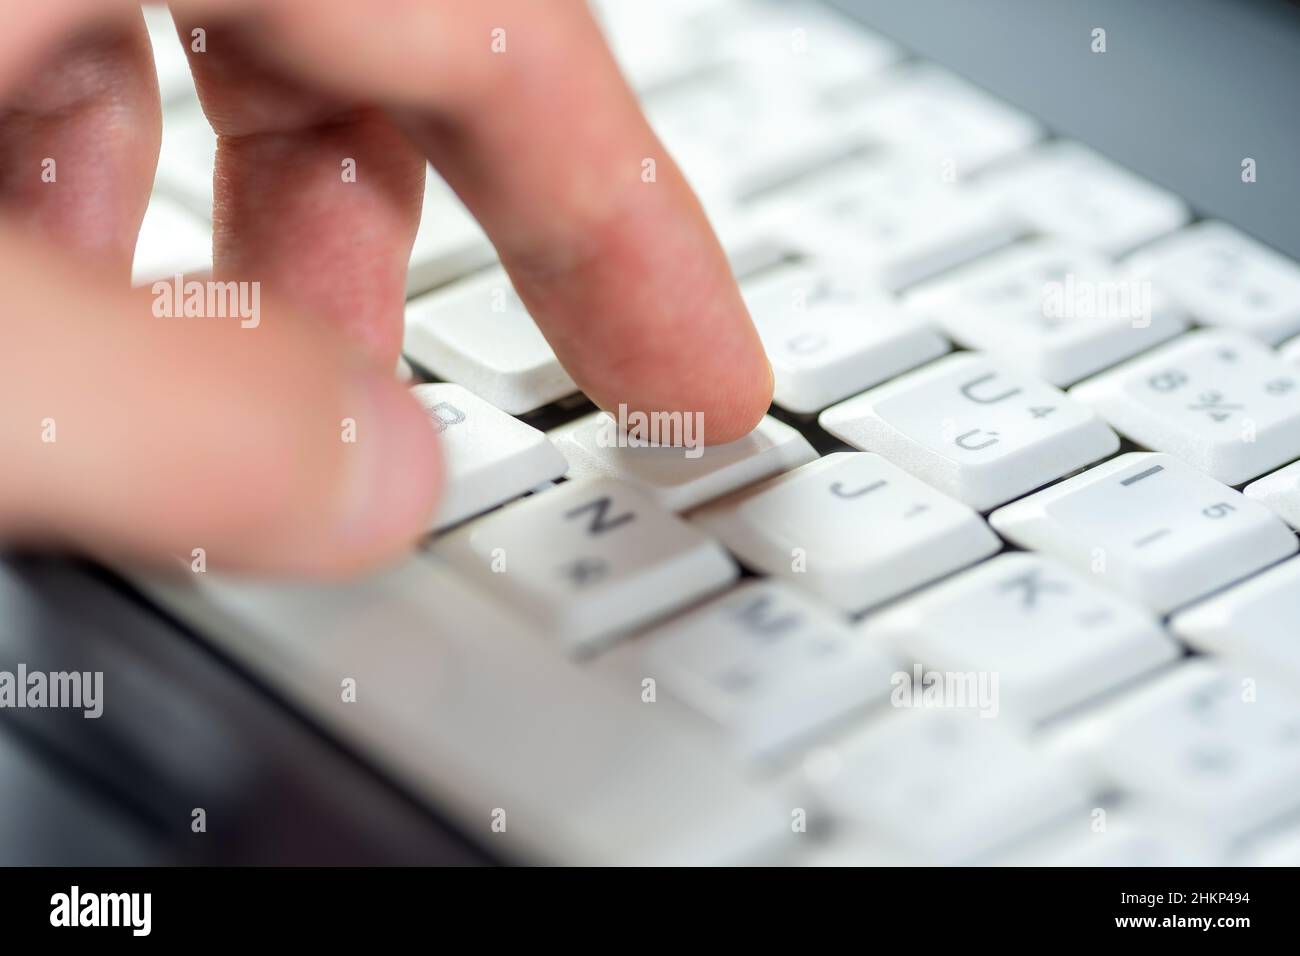 Doigt appuyant sur une seule touche d'un clavier blanc d'ordinateur portable, dof peu profond, macro d'objet, détail, gros plan extrême.Utilisation d'un ordinateur, expérience utilisateur, Inte Banque D'Images